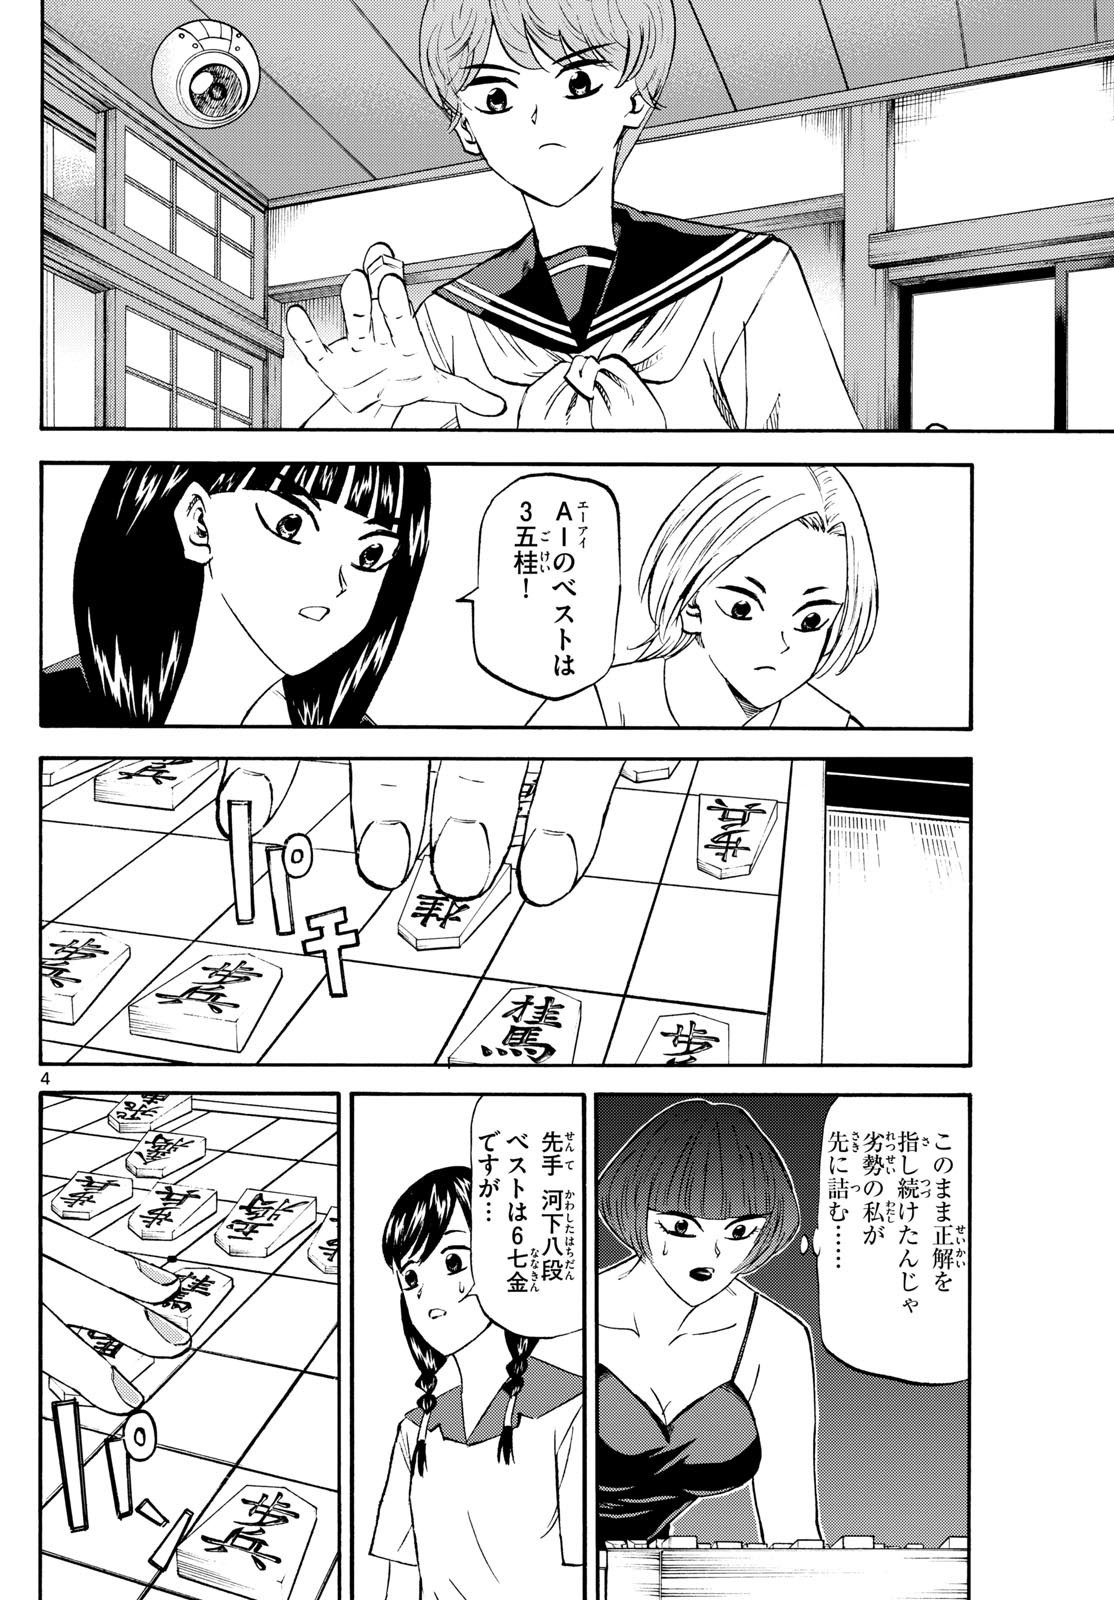 Ryu-to-Ichigo - Chapter 201 - Page 4